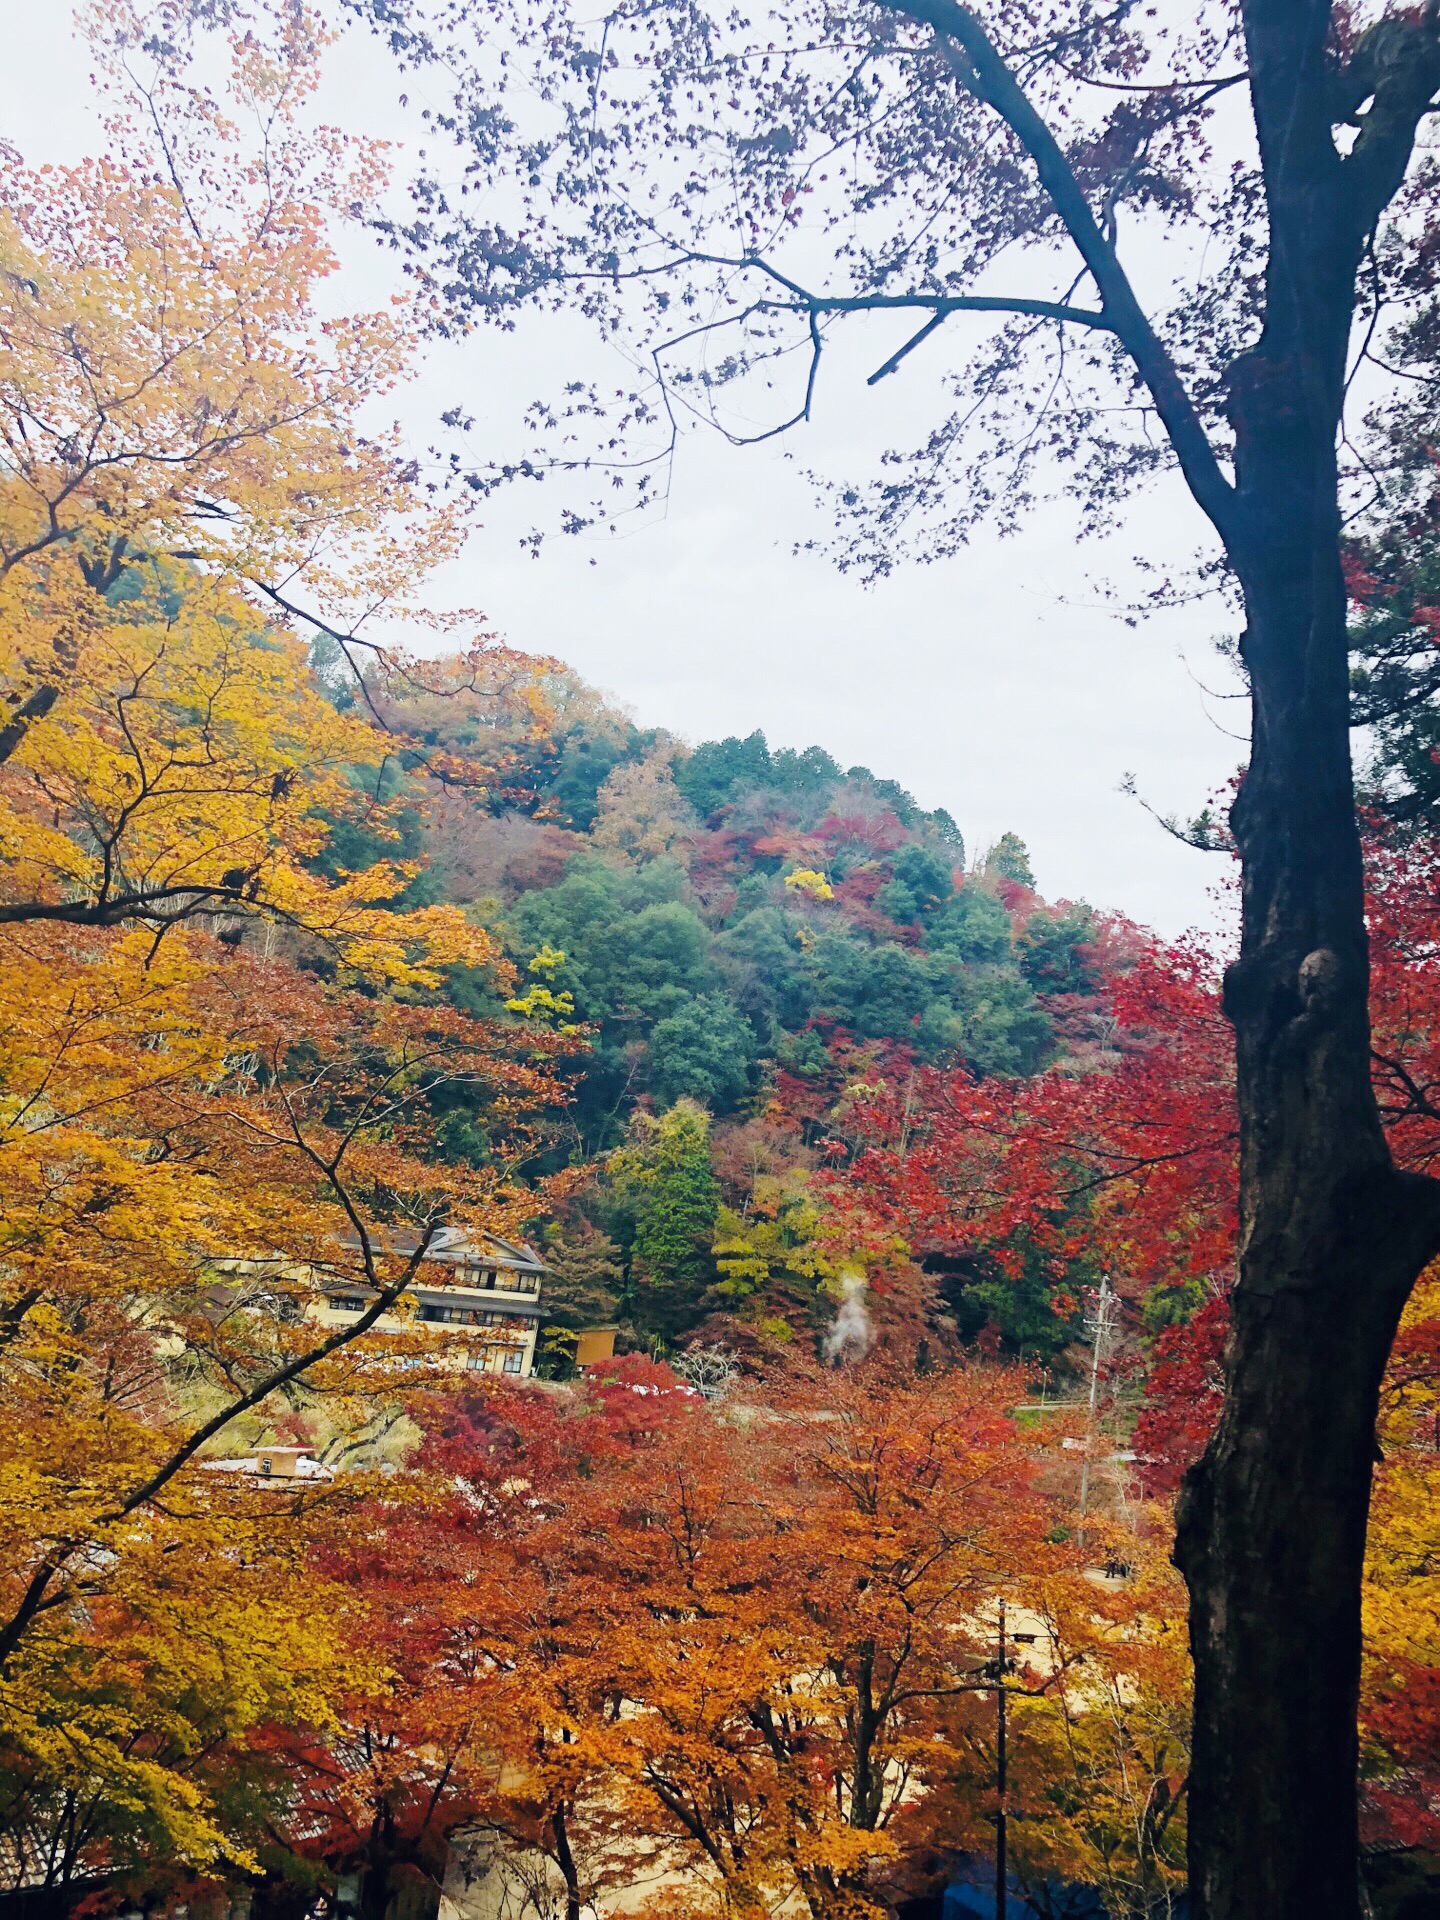 香岚溪是日本东海地区第一红叶胜地，参荣禅师参读一卷《般若心经》后，即亲植一株红叶树于香岚溪畔。其后人